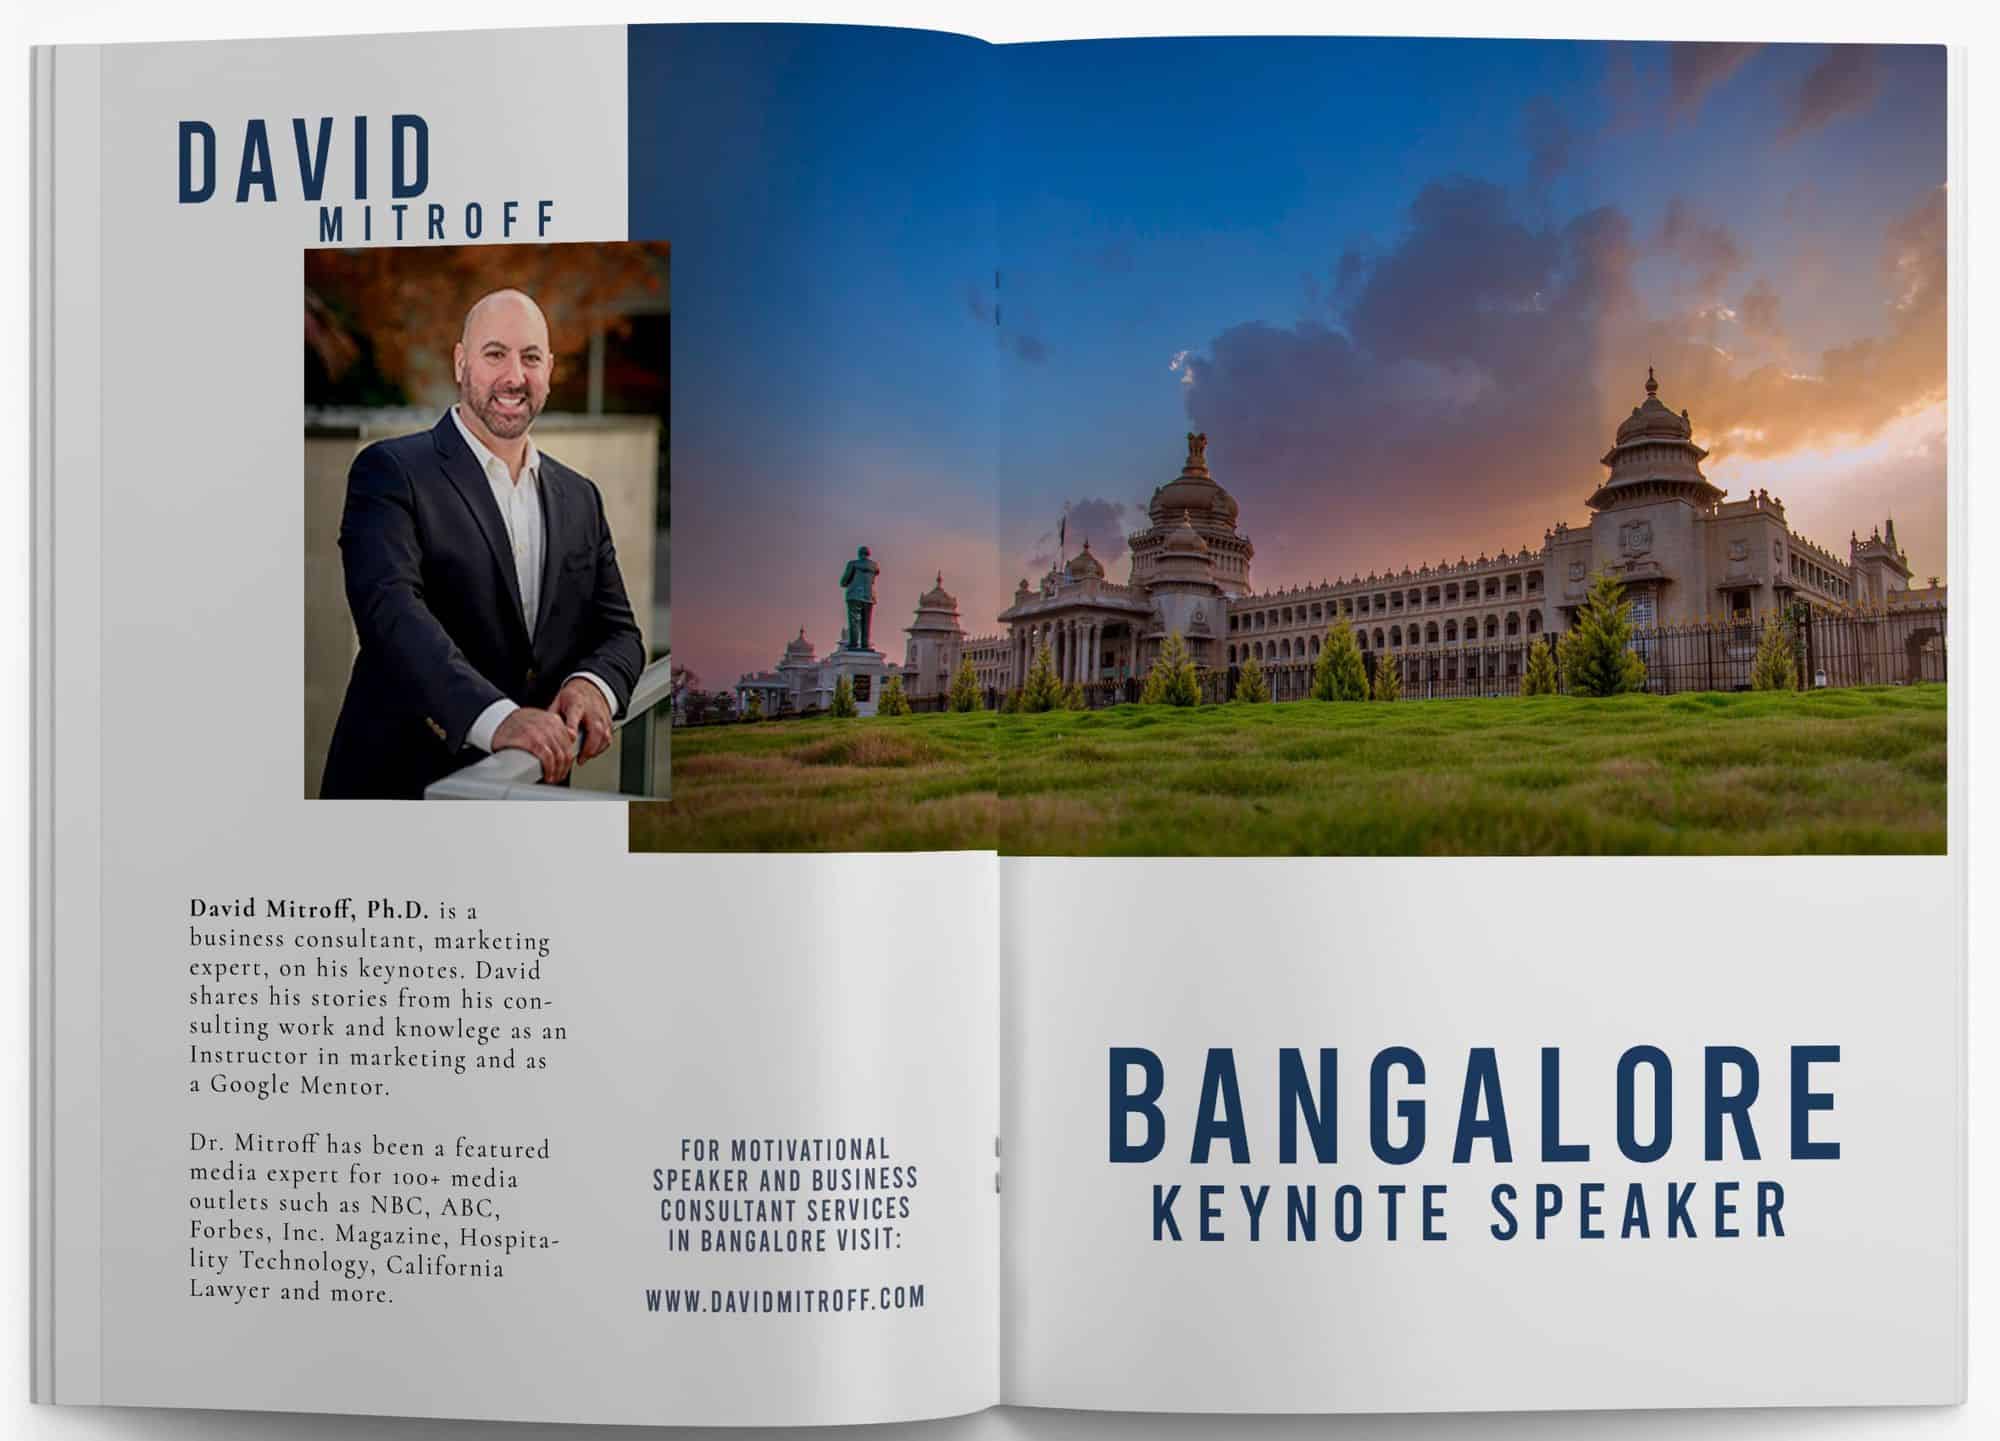 Bangalore Keynote Speaker David Mitroff